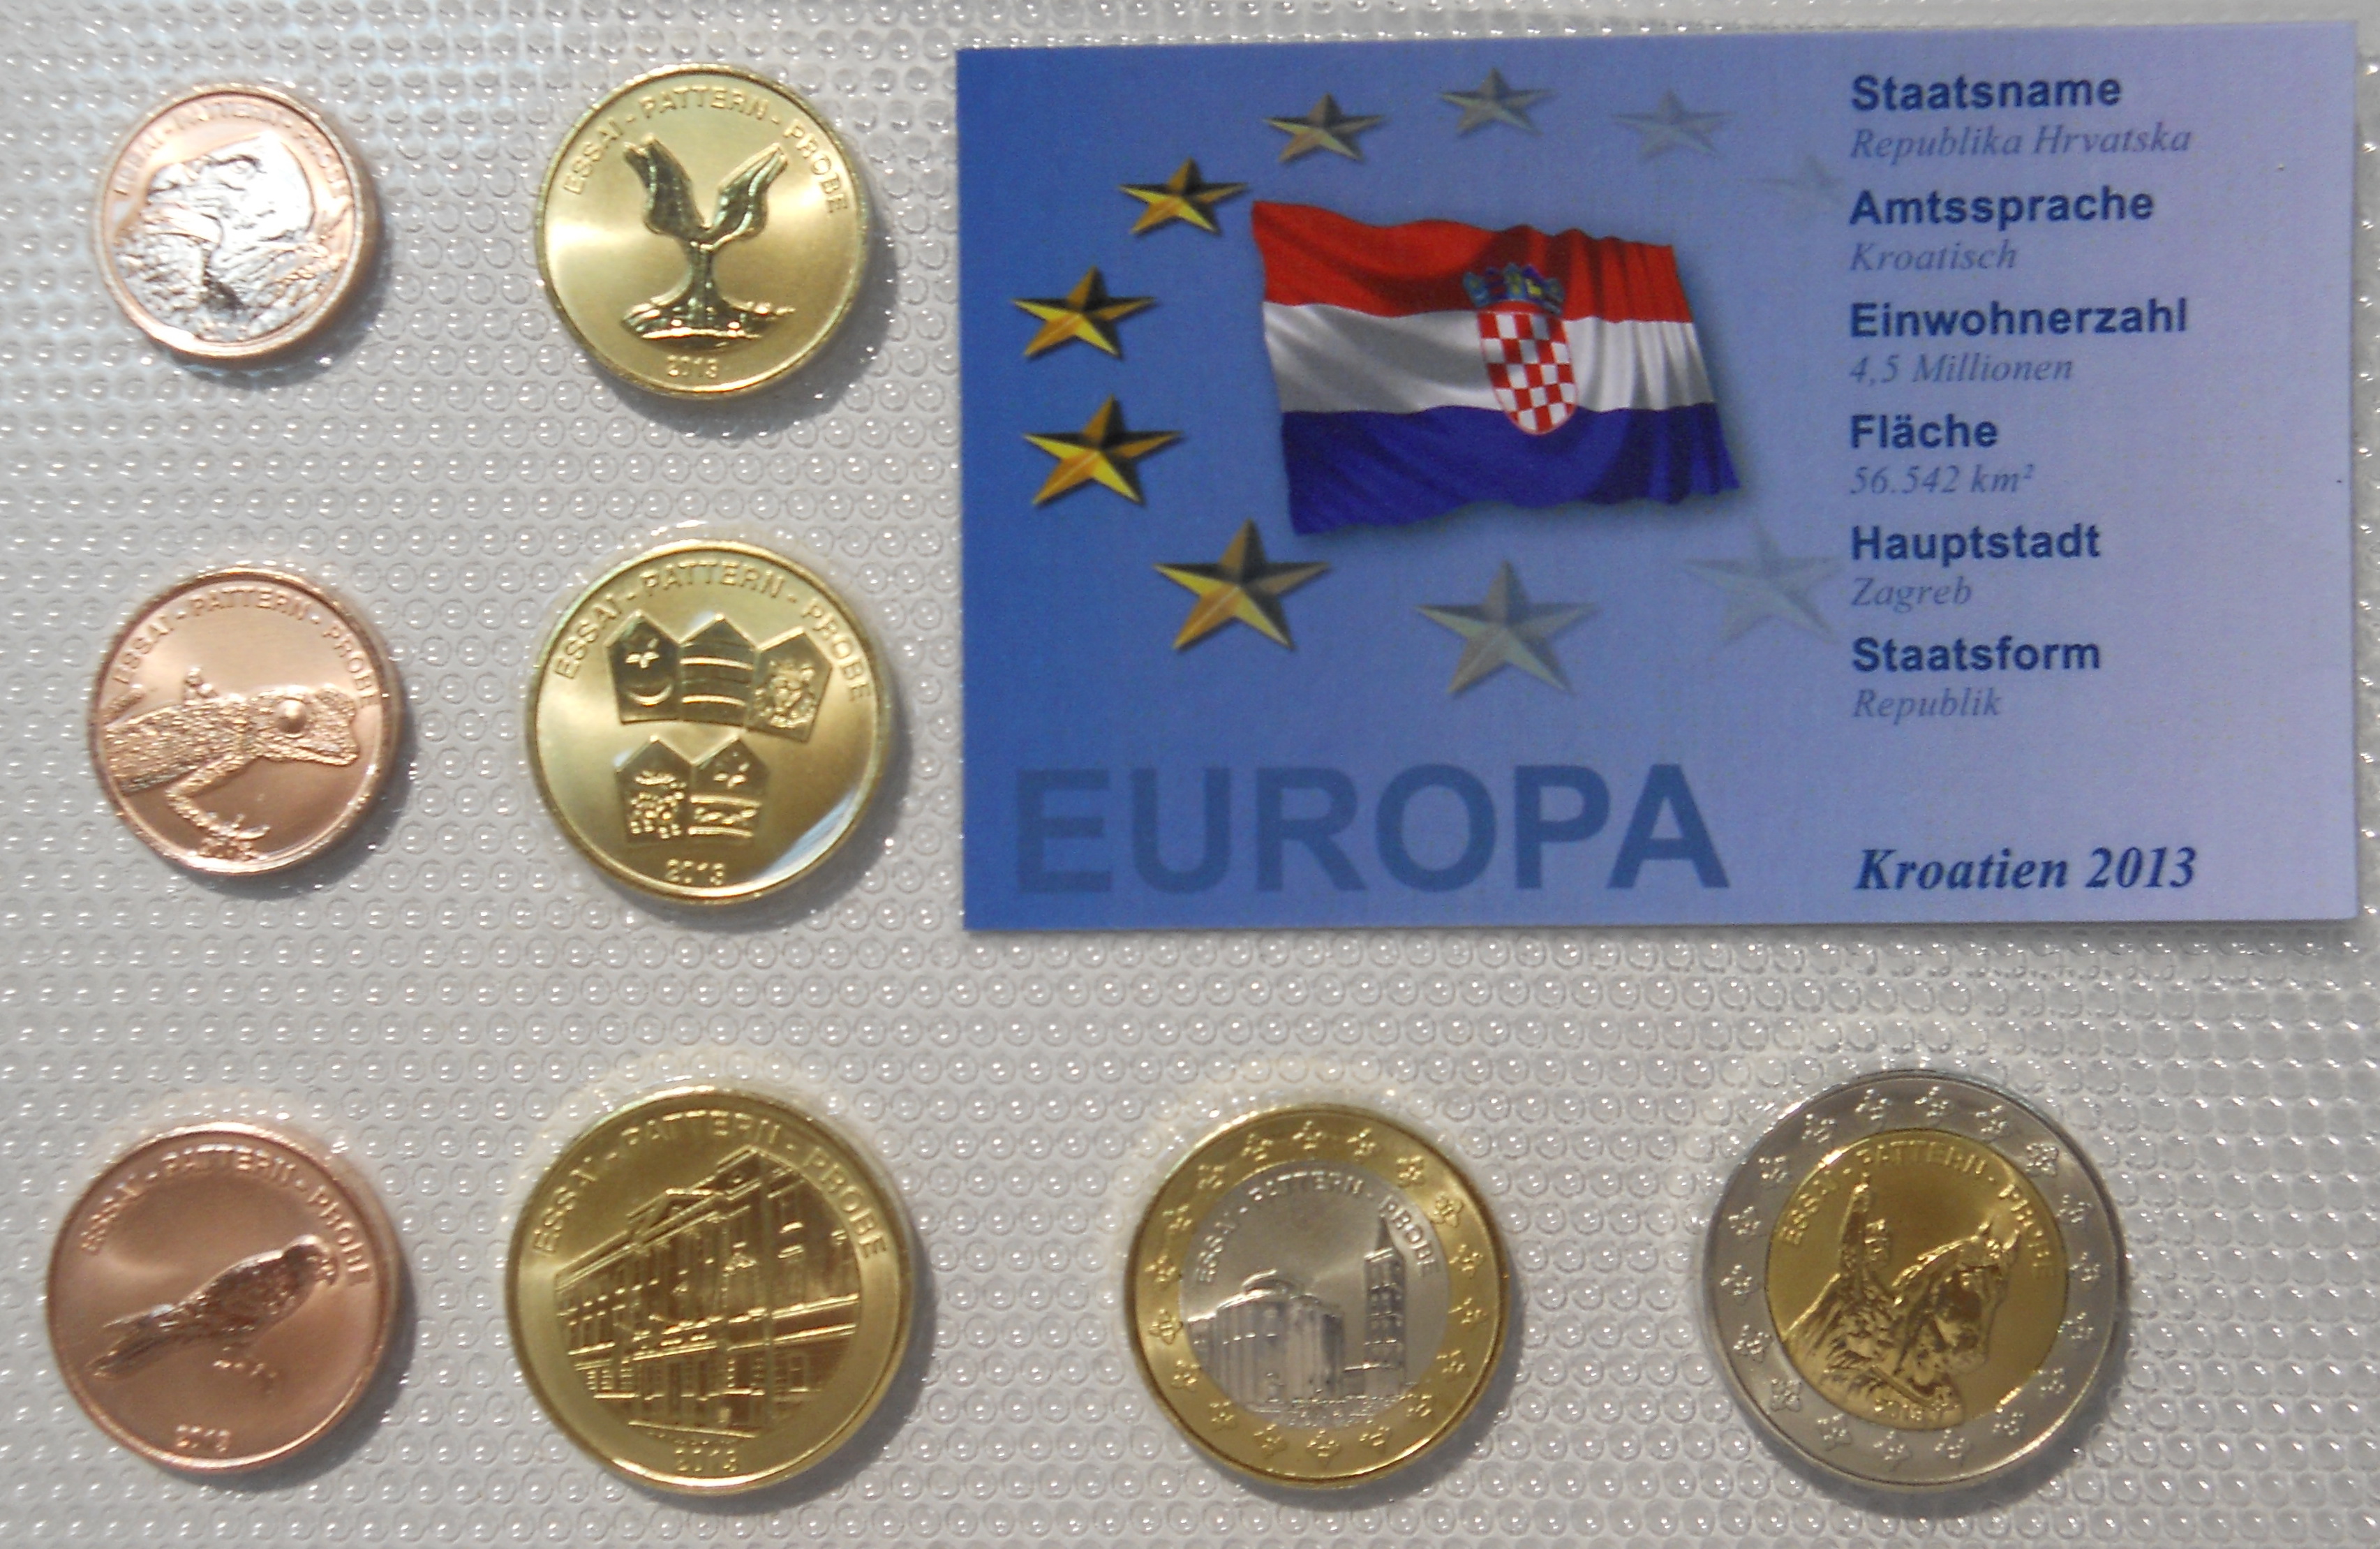 Uzorak serije hrvatskog Evra, kovanog novca koji je posvećen ulasku Hrvatske u Evropsku Uniju 2013.